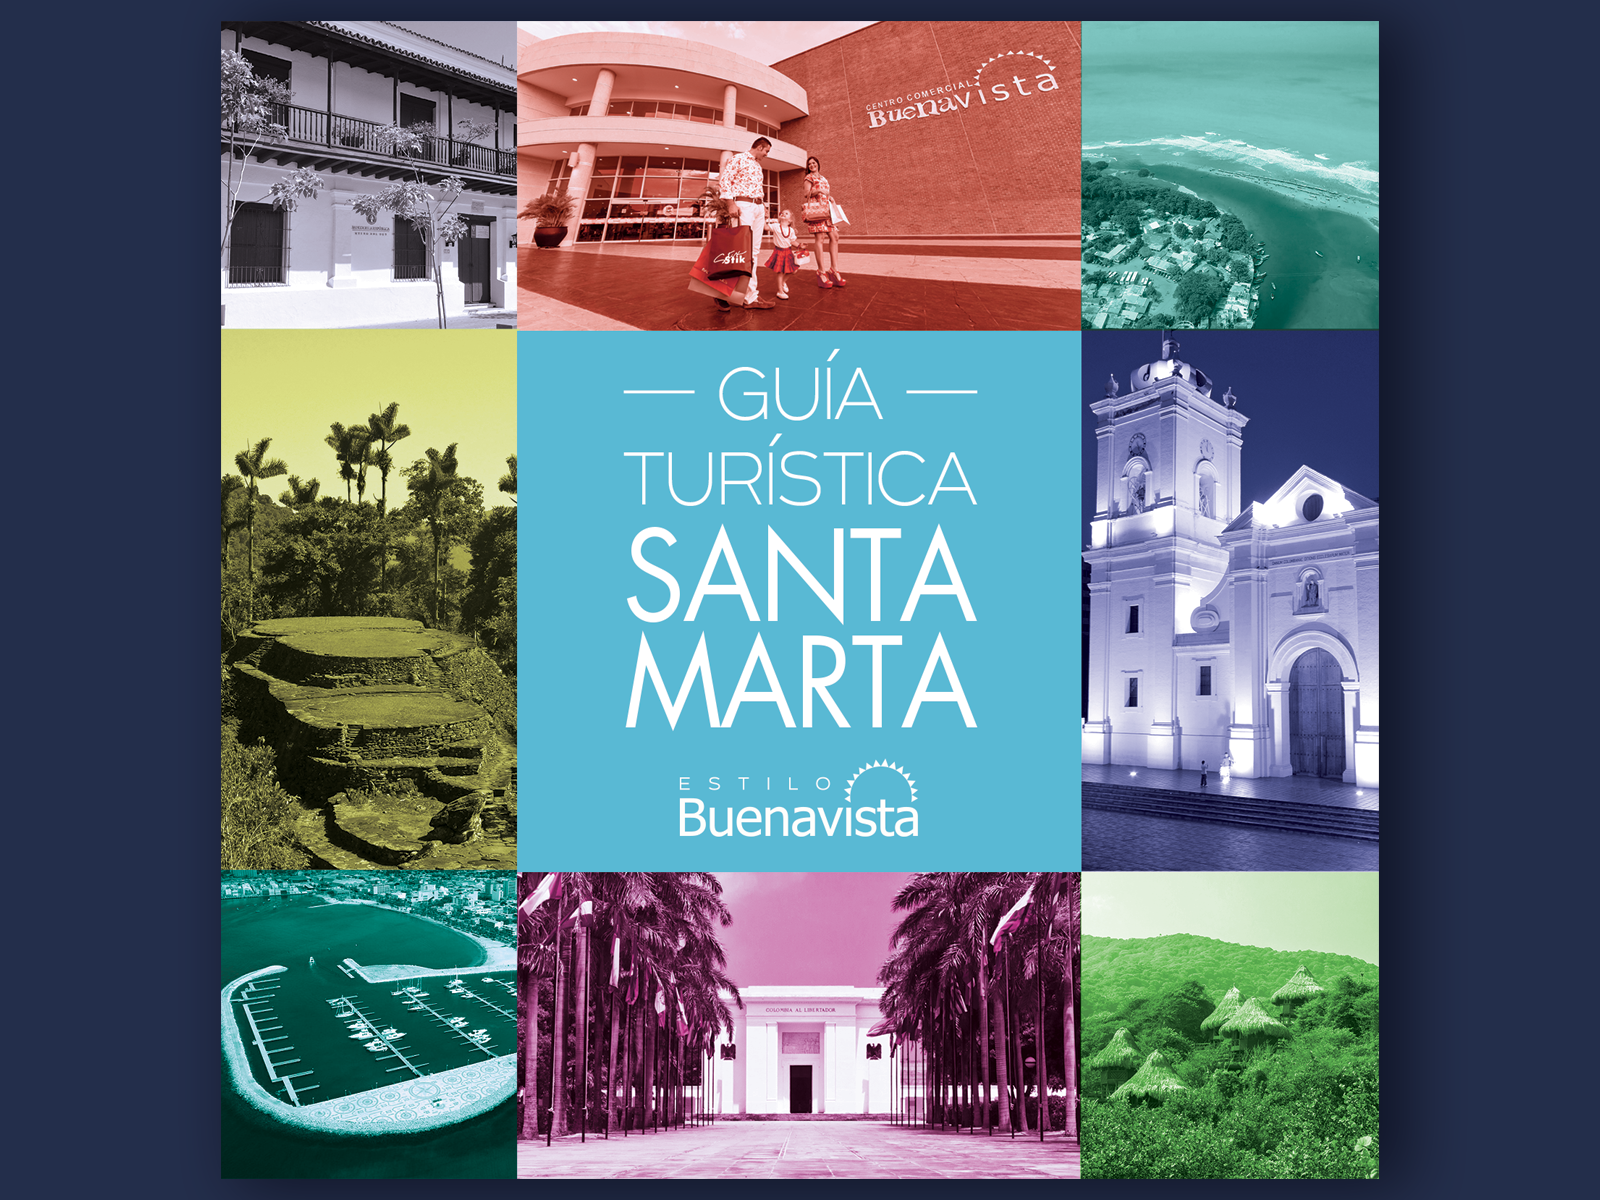 Guía turística Santa Marta - Colombia by Charlie Morales on Dribbble